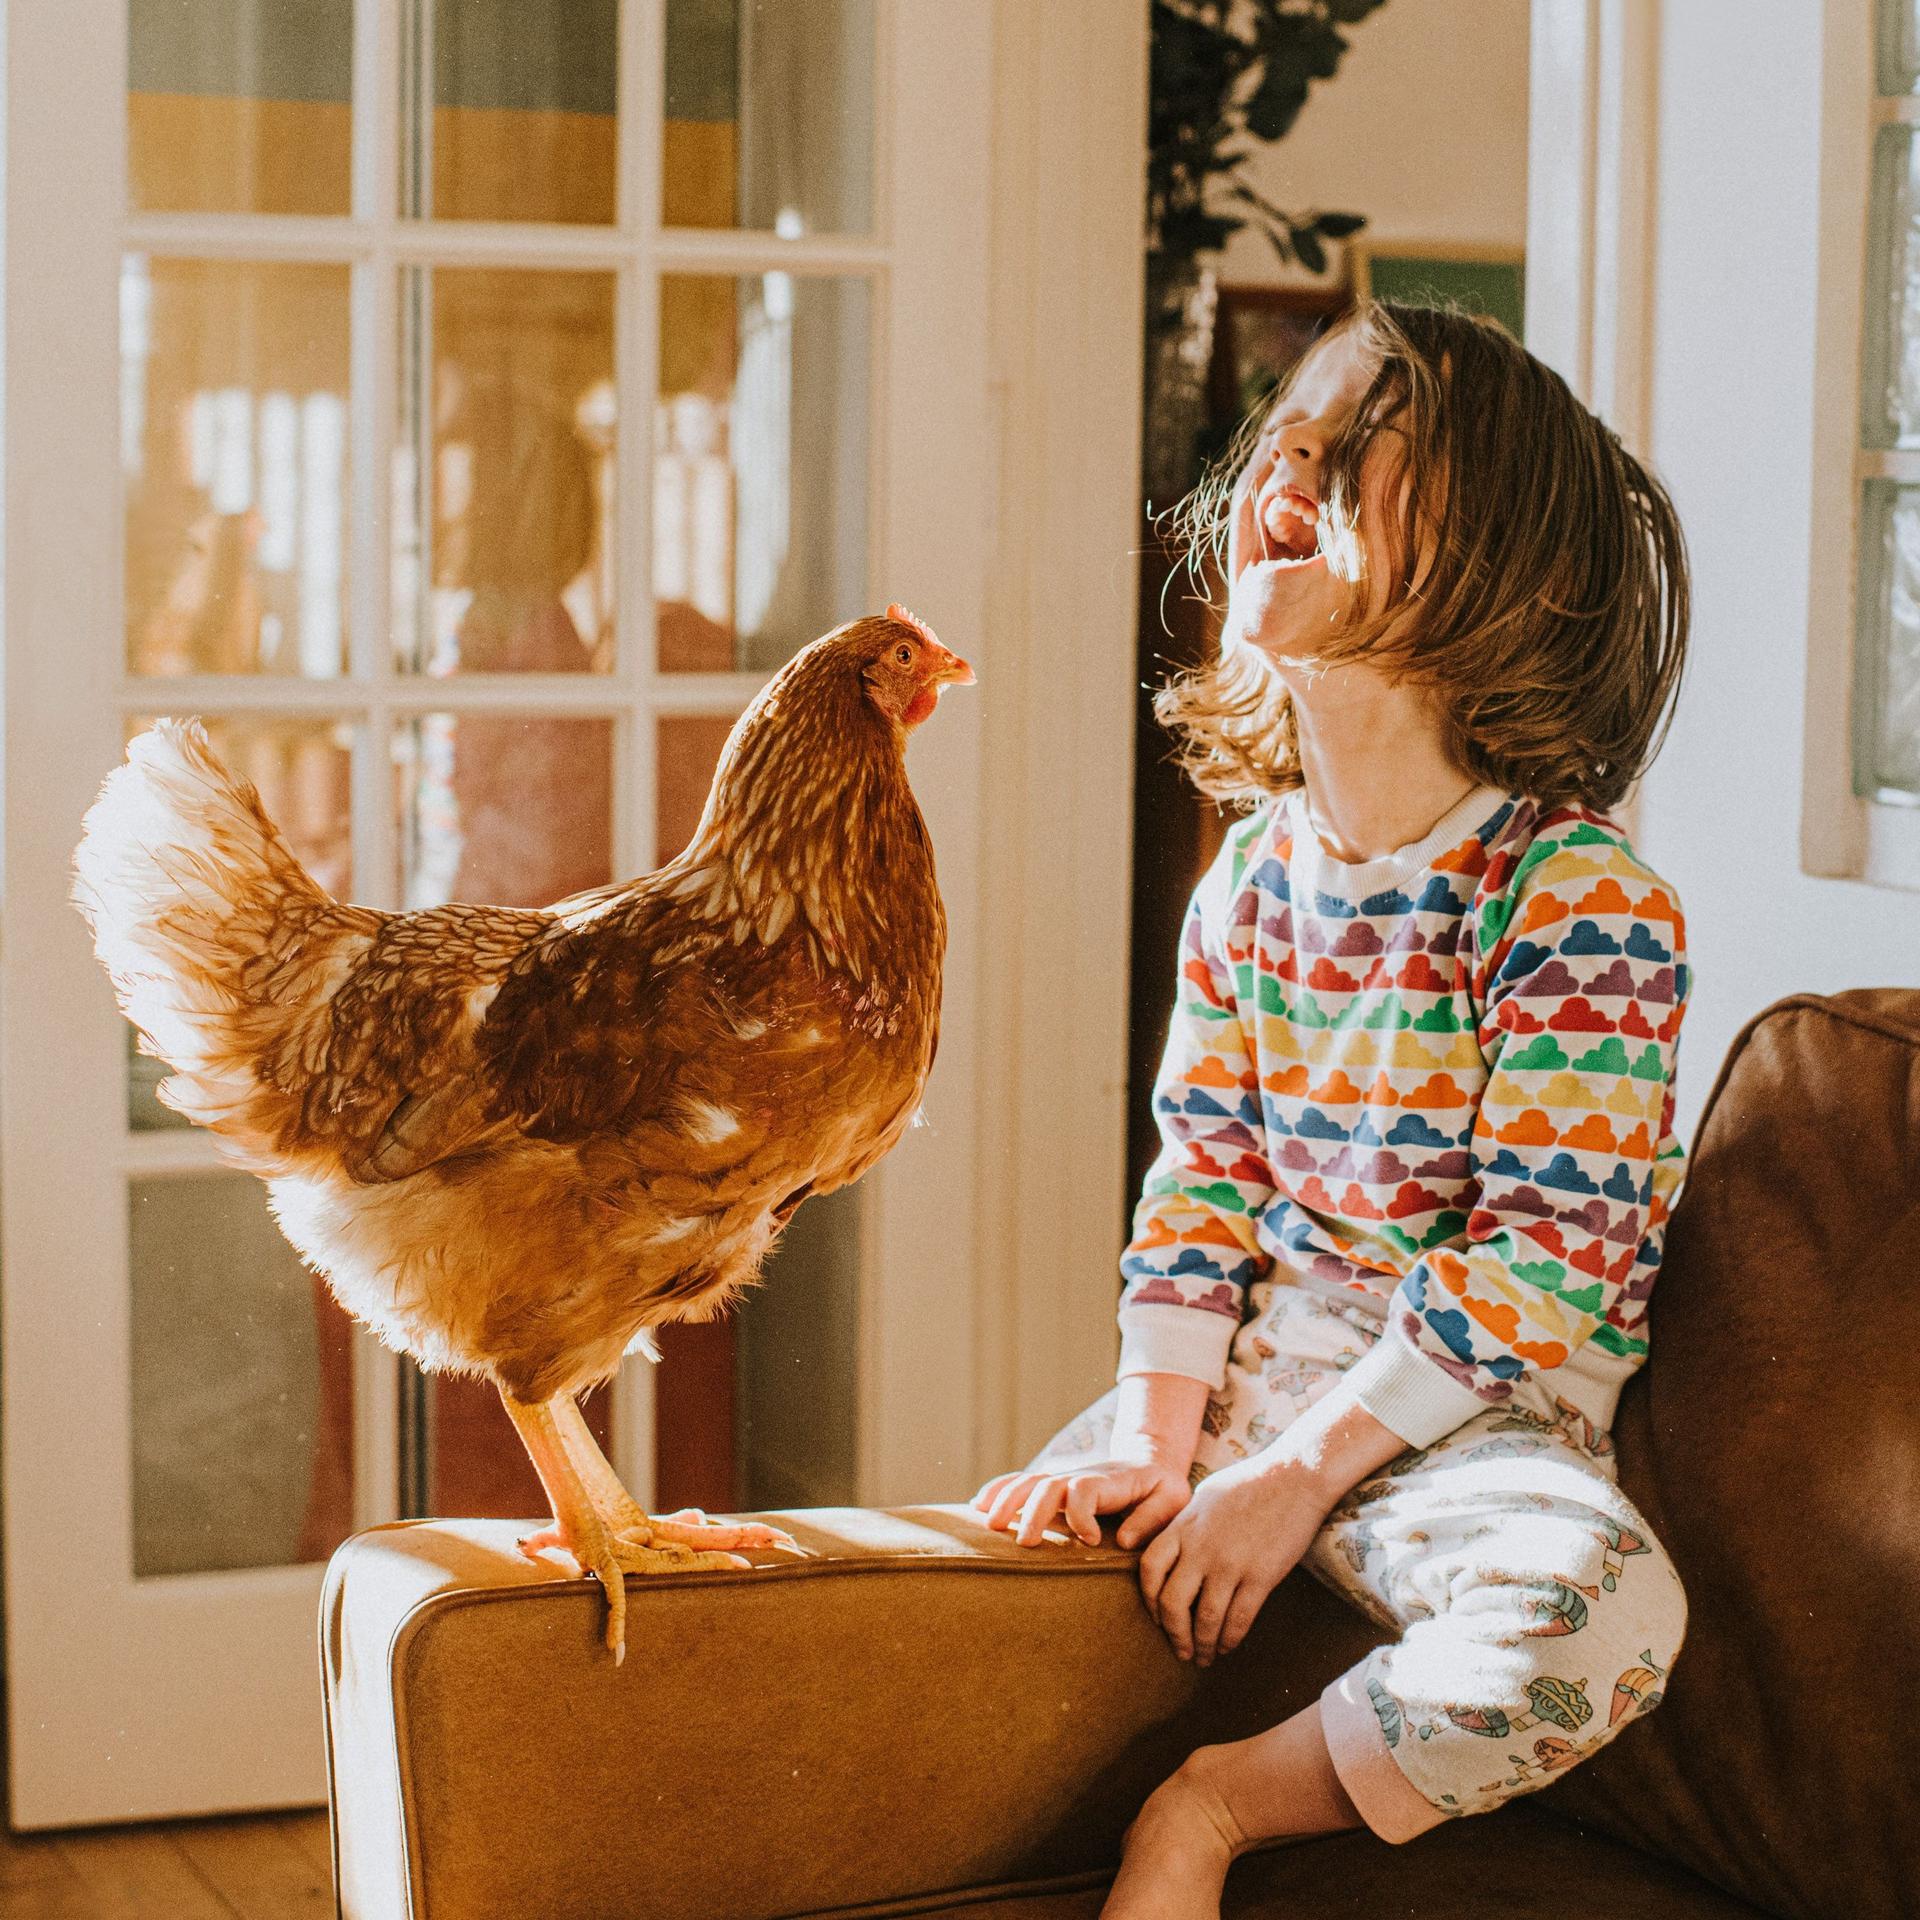 Huhn und ein glückliches Kind zusammen auf einem Ledersofa in einem sonnigen Wohnraum